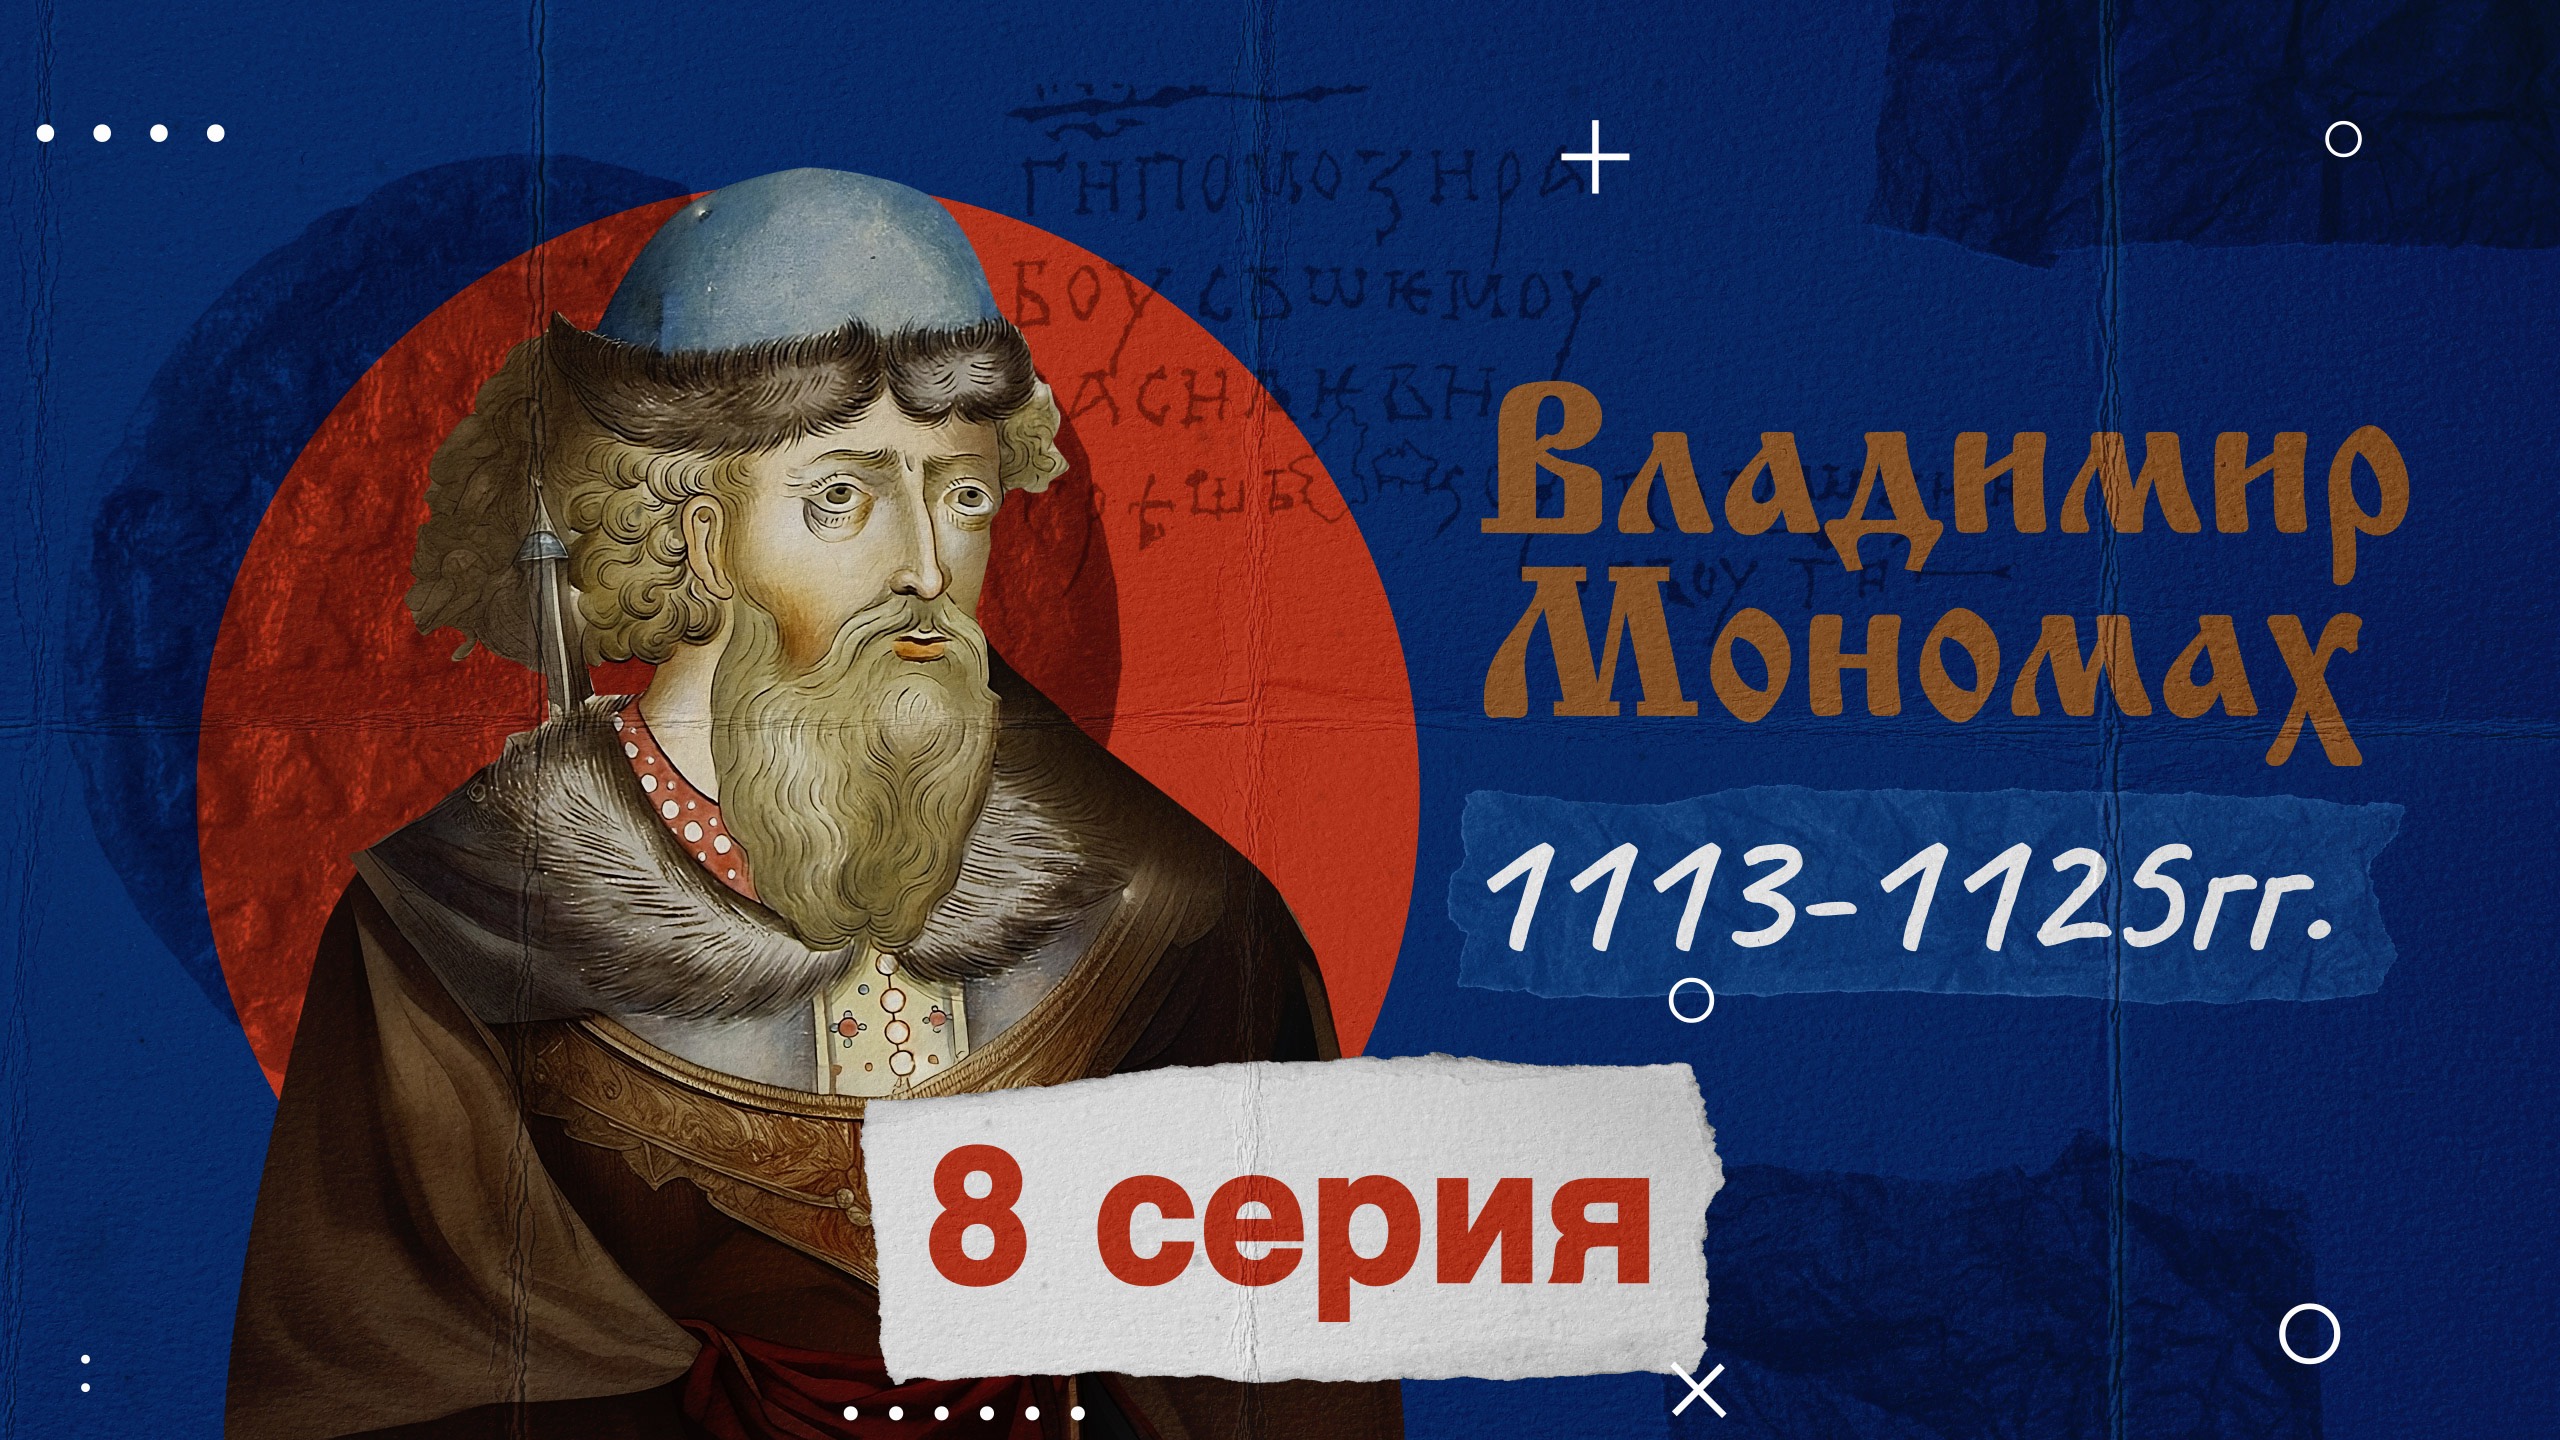 Князь Владимир Мономах -1113-1125г. История России